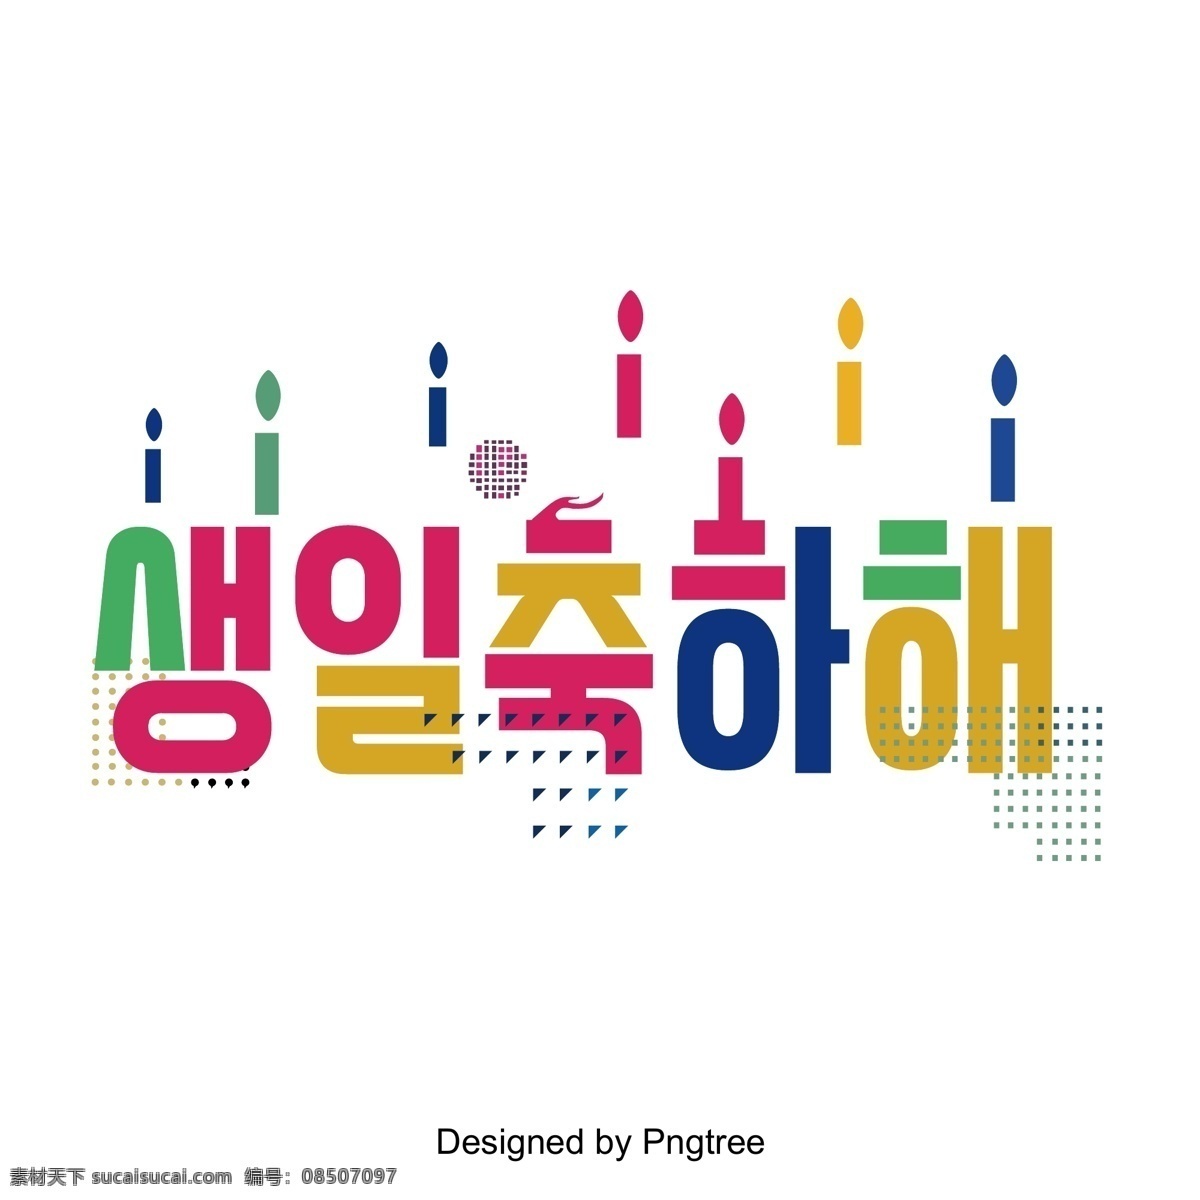 生日 快乐 到场 景 中 人物 字体 颜色 祝你生日快乐 彩色绘画 几何 超 节日庆典 韩文 现场 向量 立体